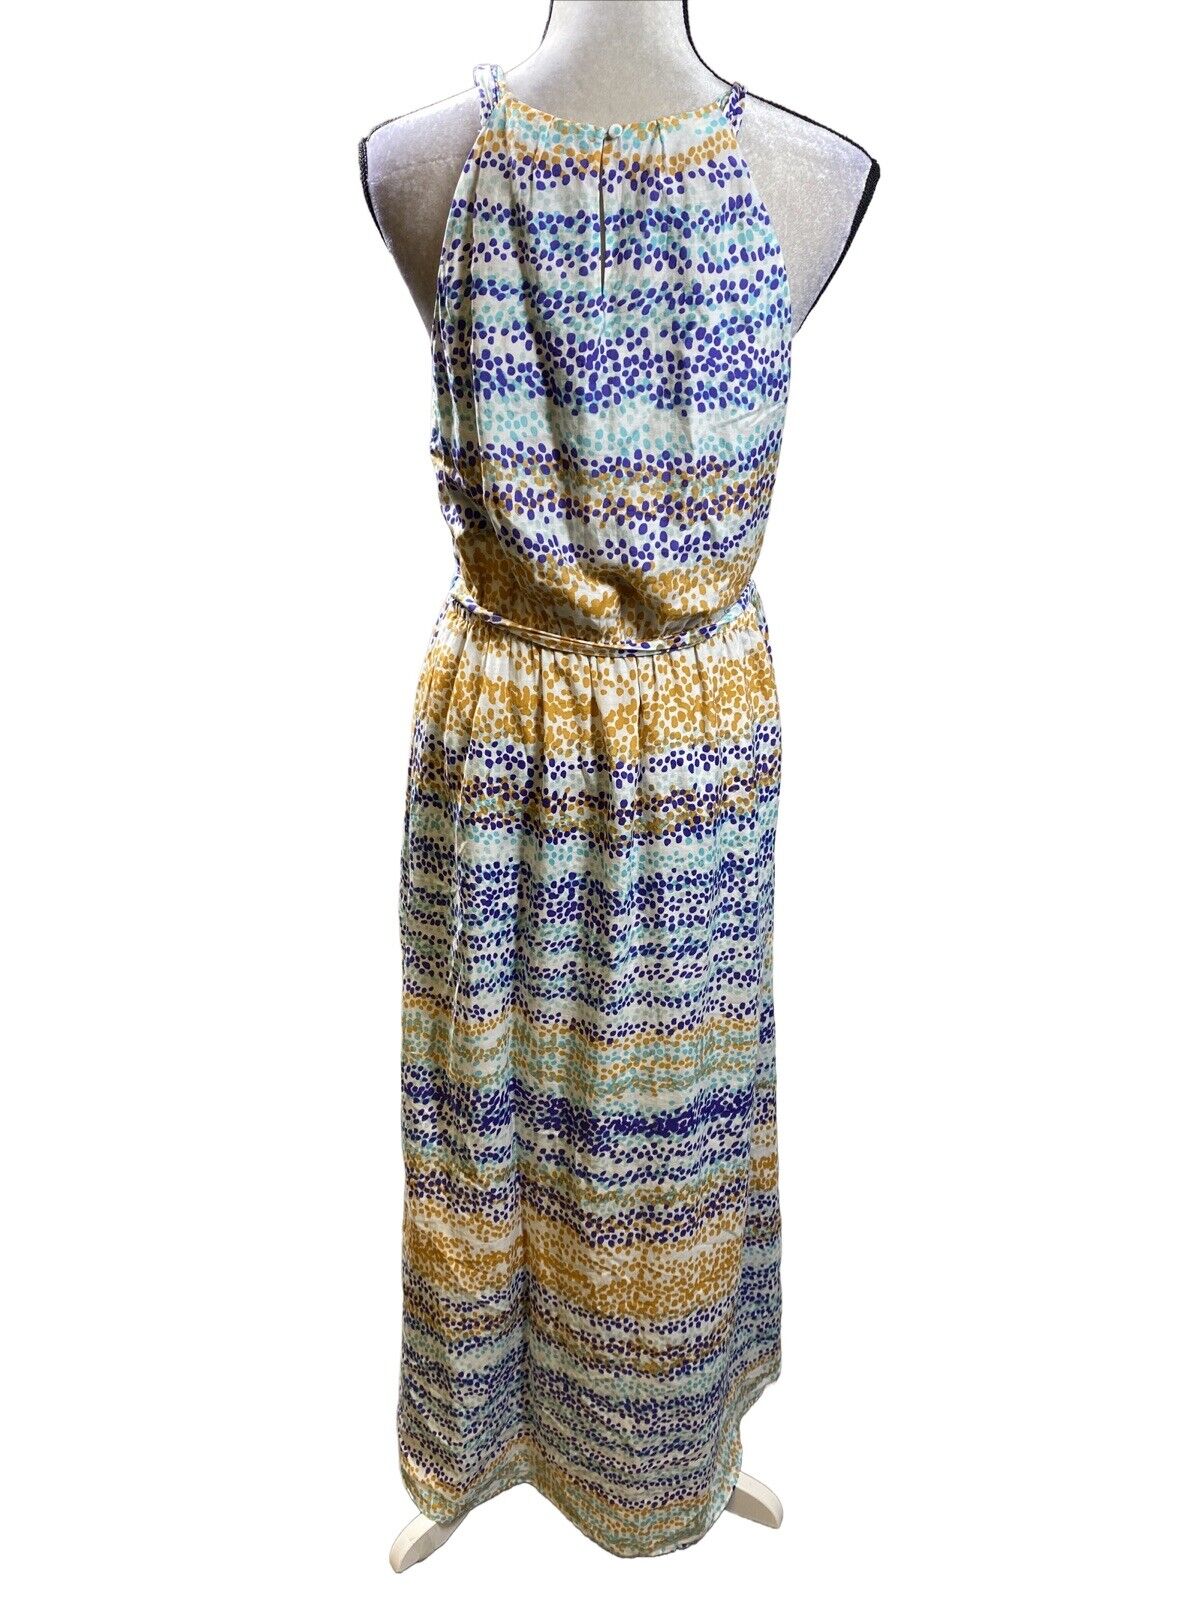 Ann Taylor Women's Blue Tie Waist Sleeveless Maxi Dress - 8